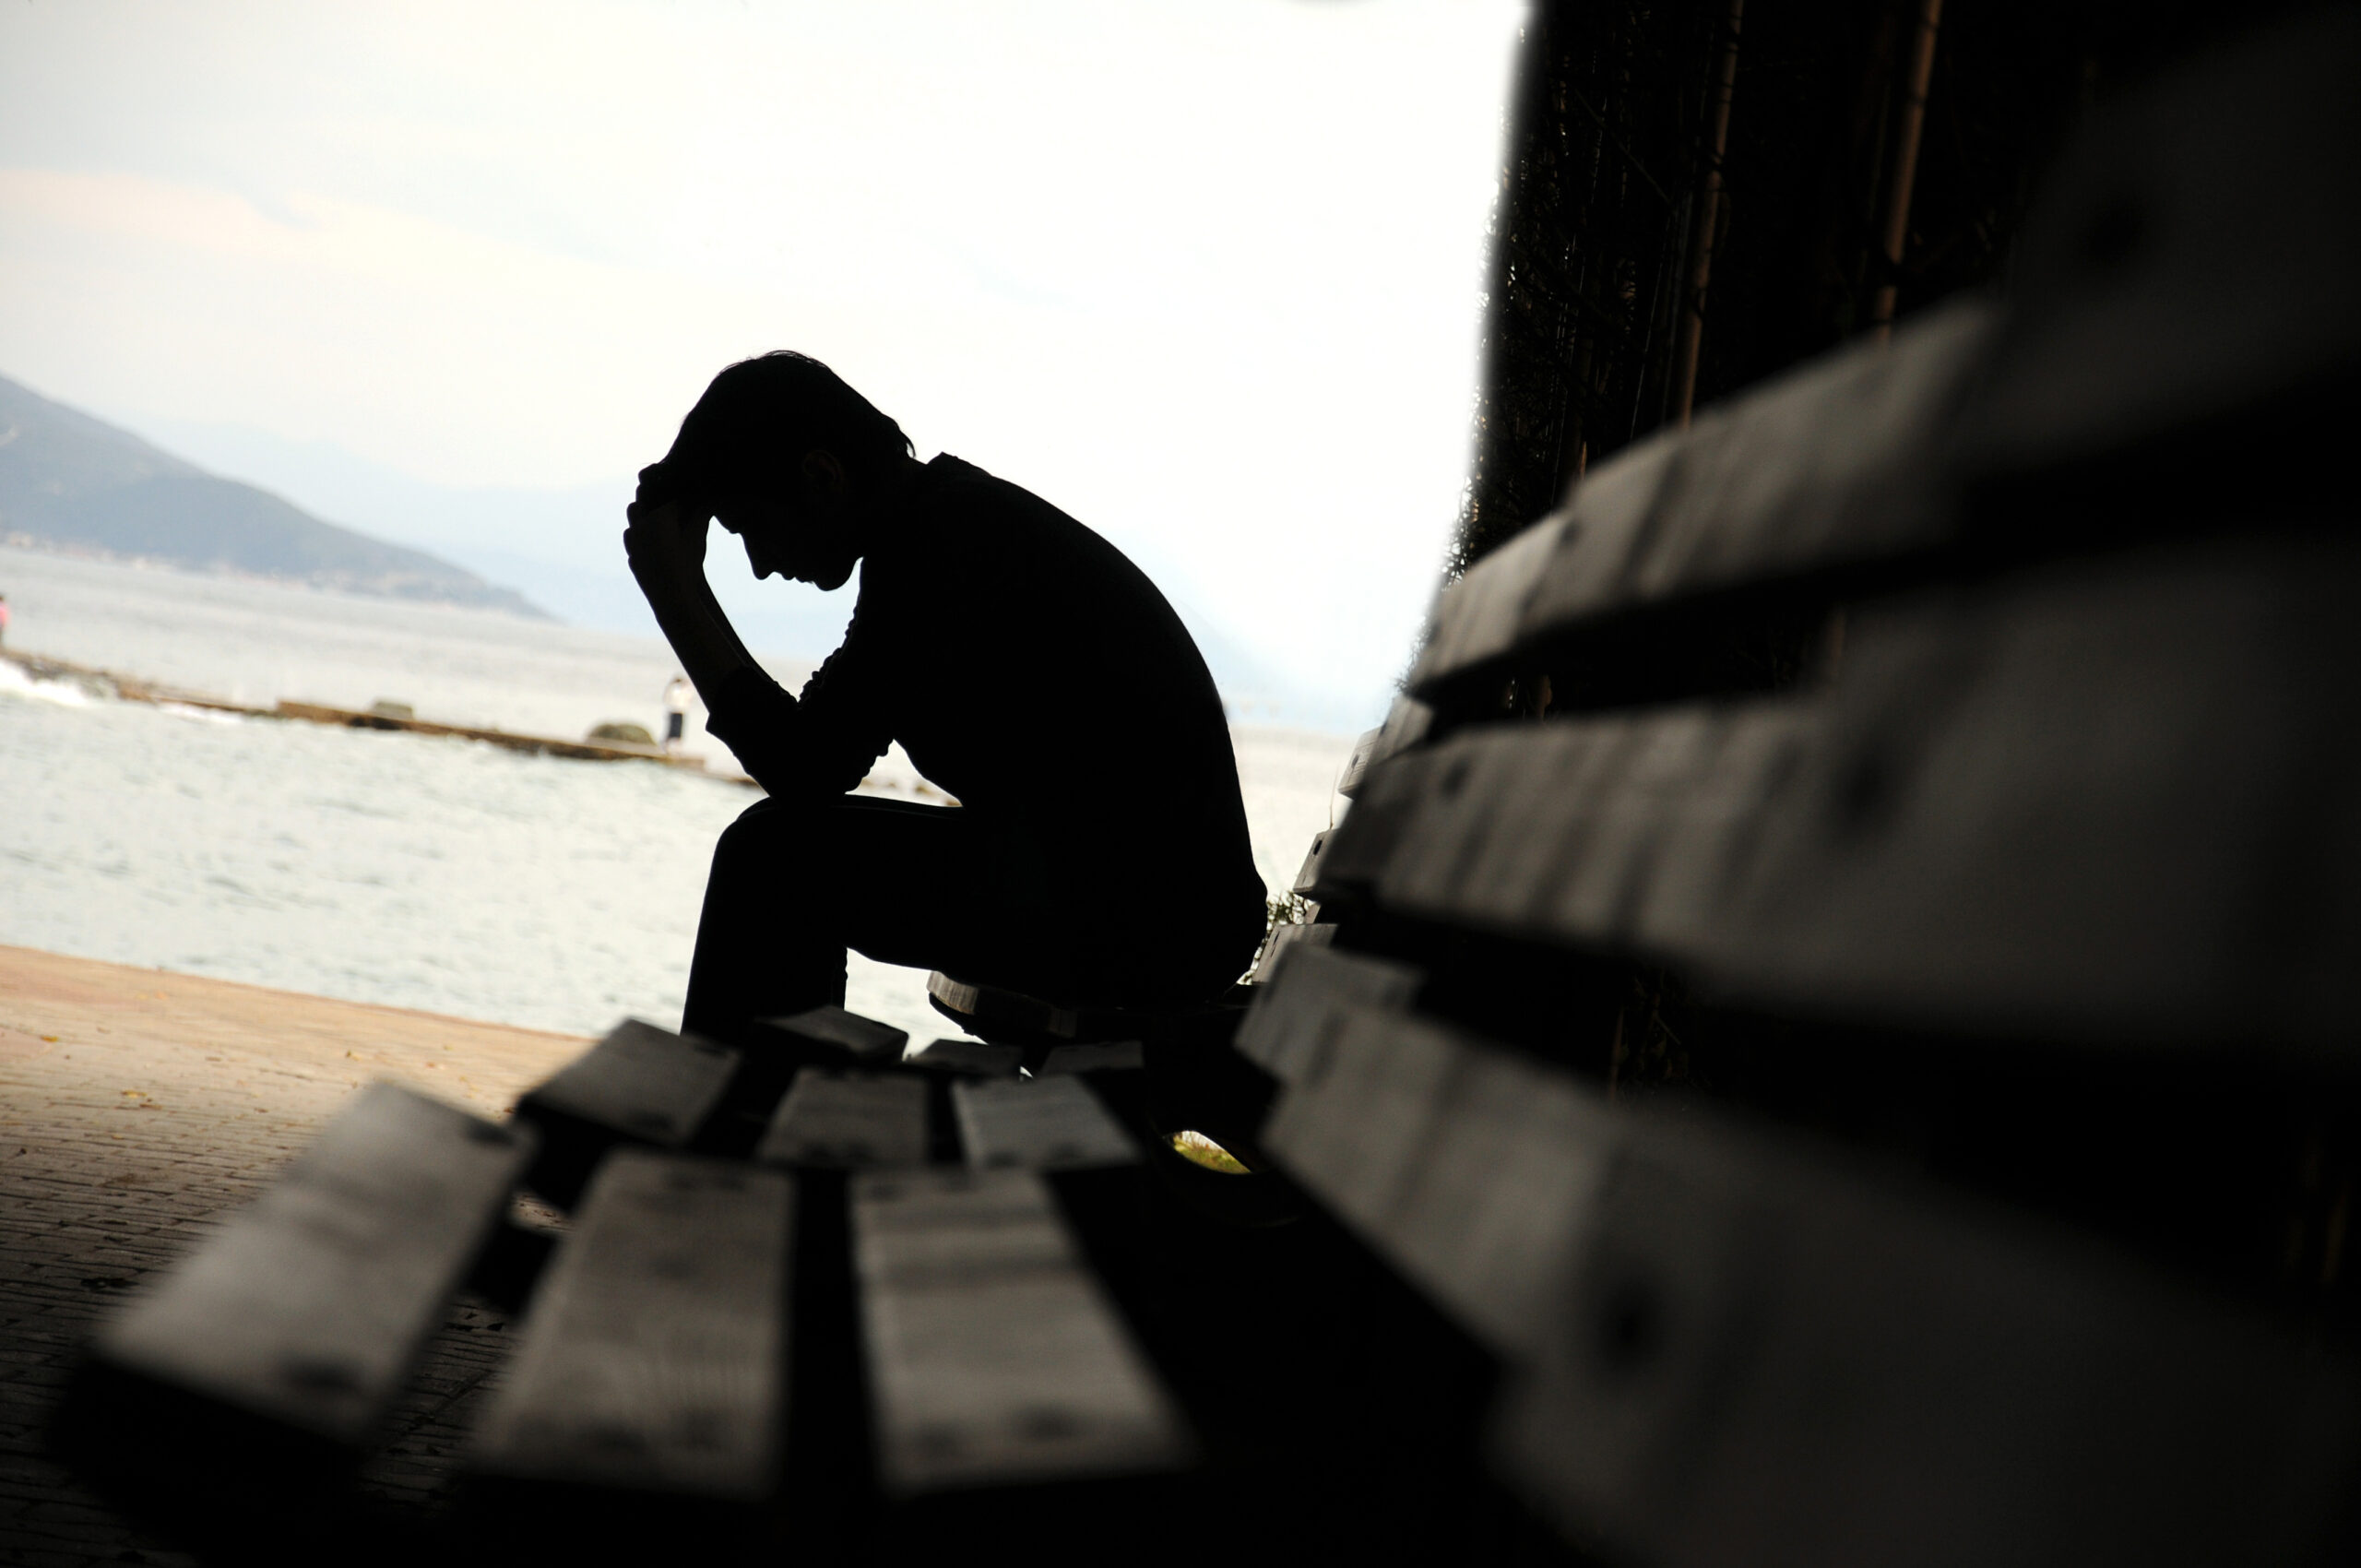 درمان افسردگی در مردان